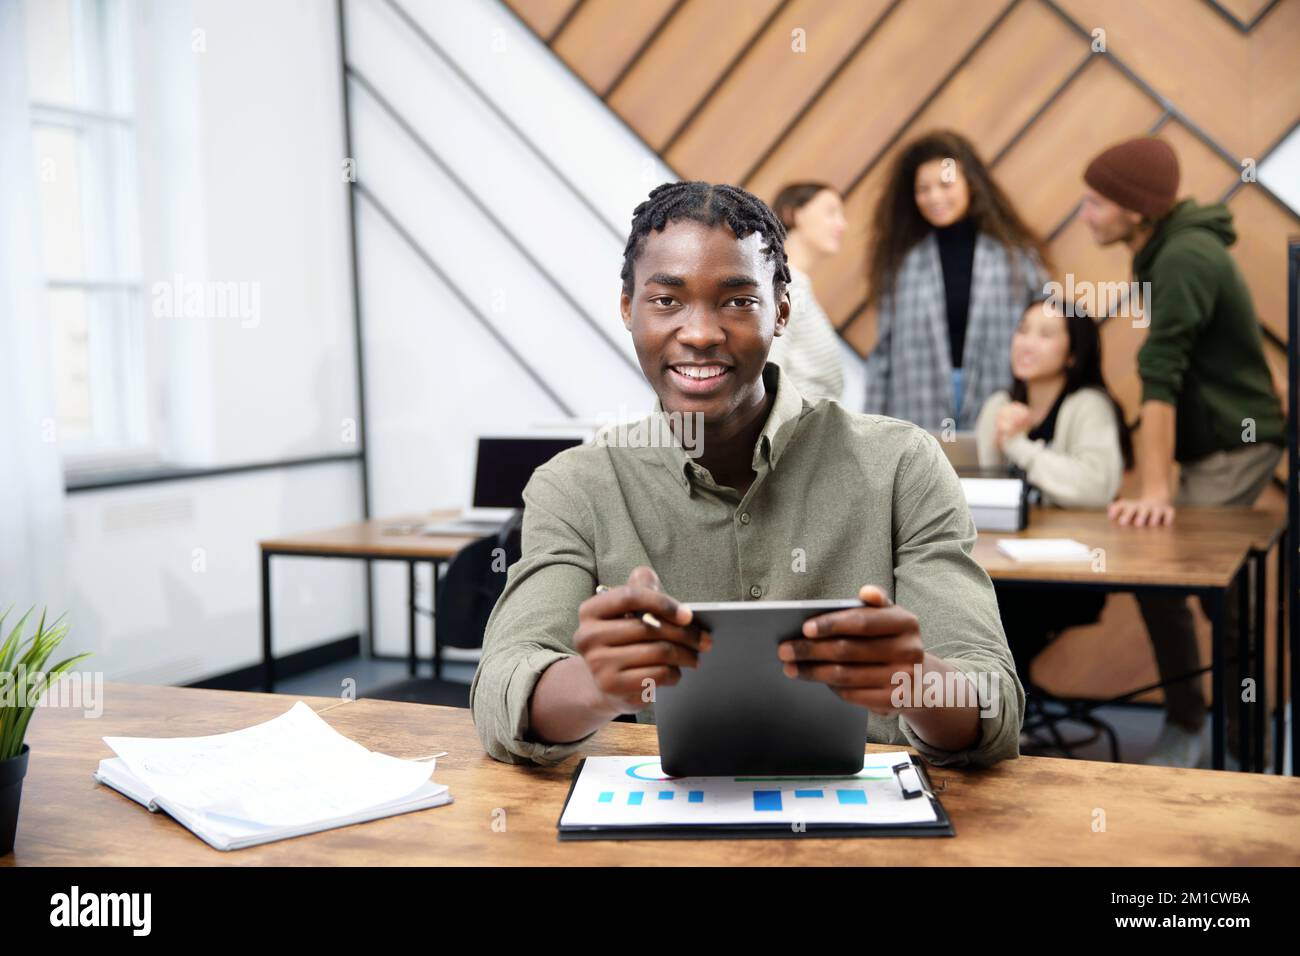 Ein junger Mann mit einem digitalen Tablet arbeitet in einem Co-working-Center. Stockfoto